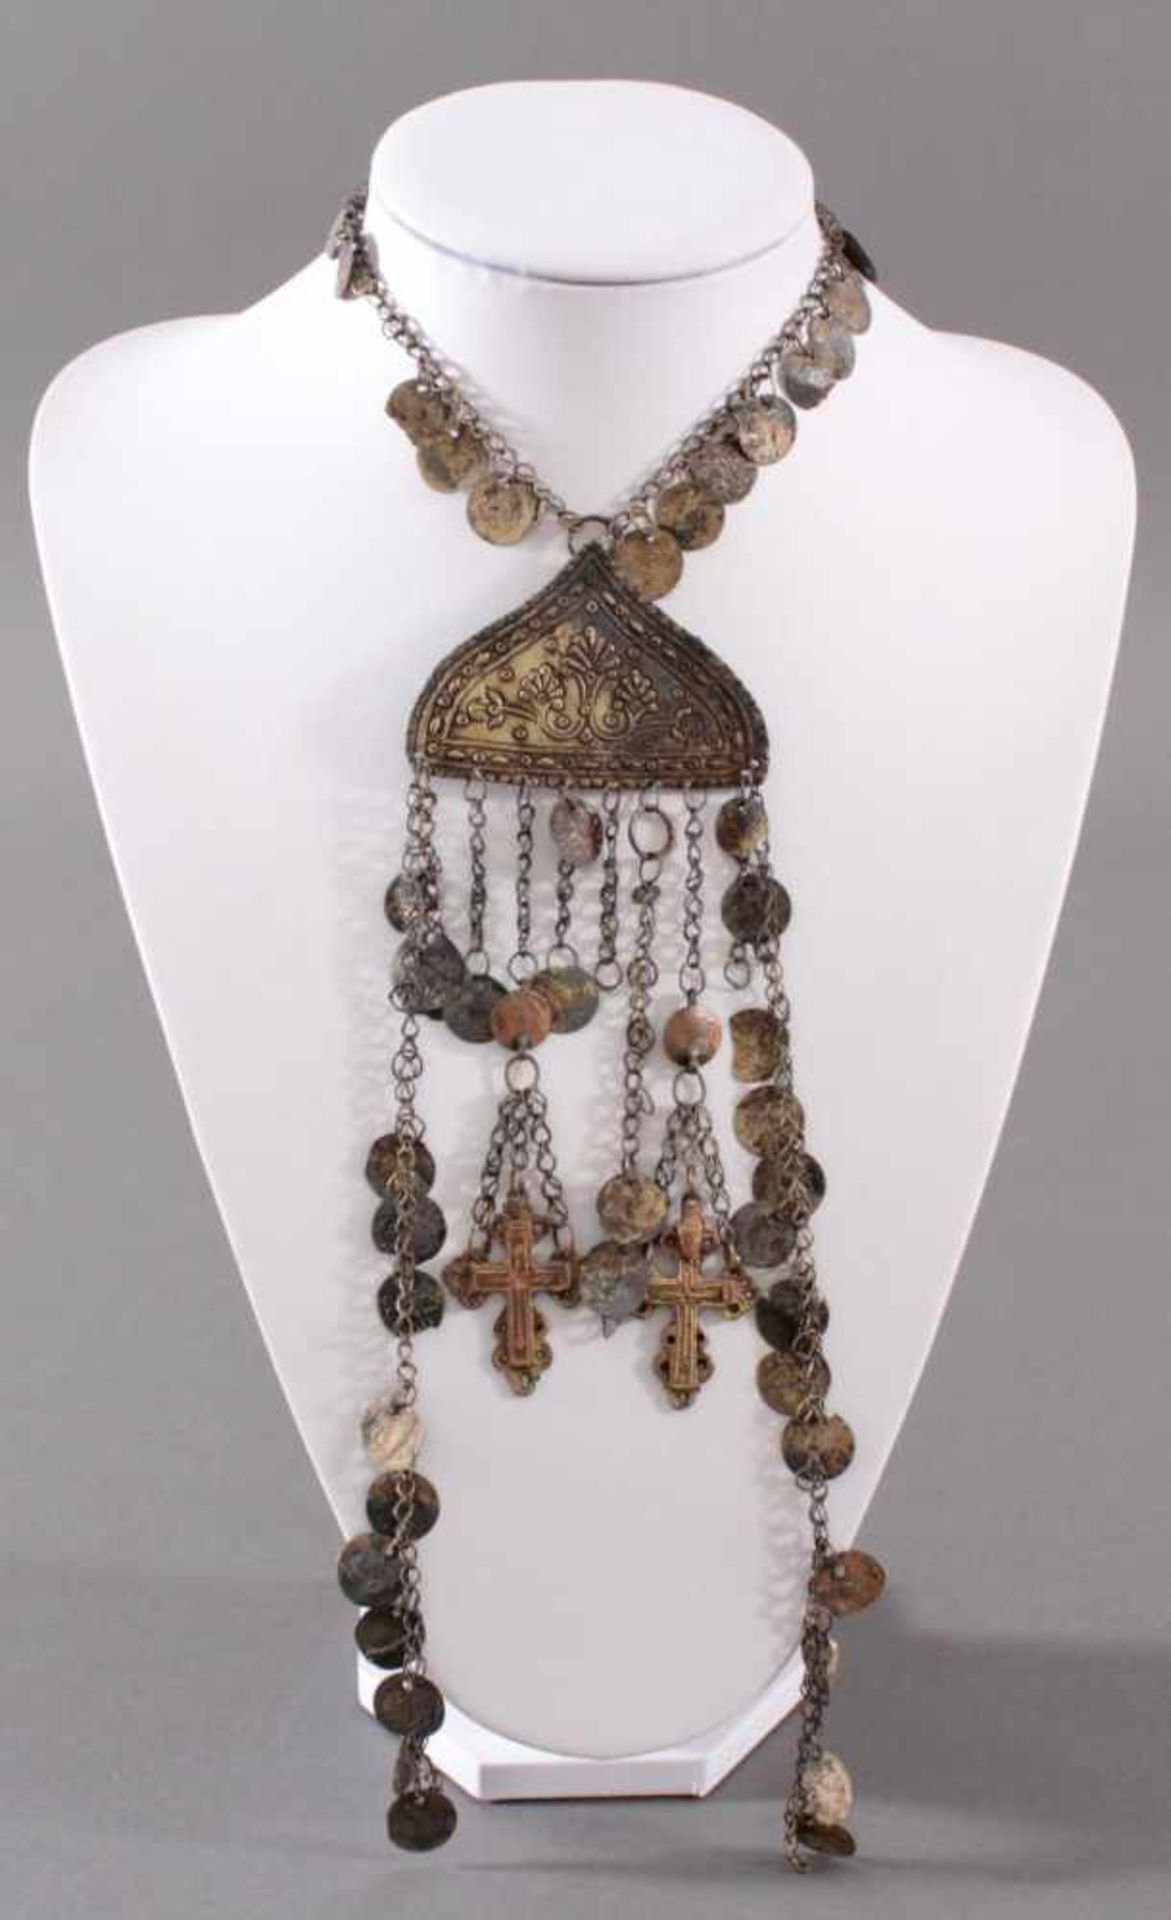 Trachtenschmuck aus dem 19. Jh.mit Ornamenten verzierte Mittelstücke in Herzform und münzartige